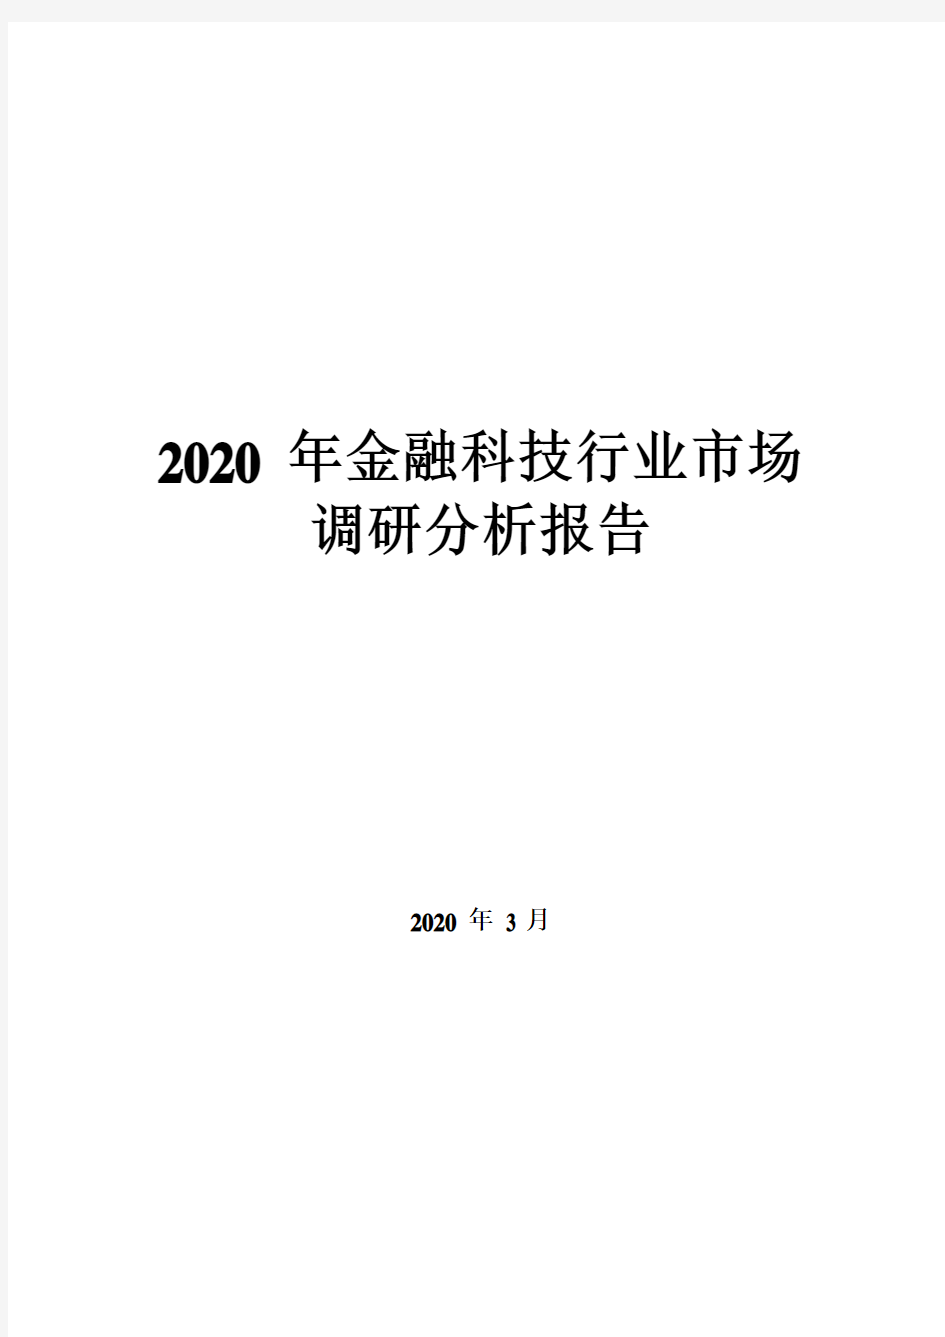 2020年金融科技行业市场调研分析报告